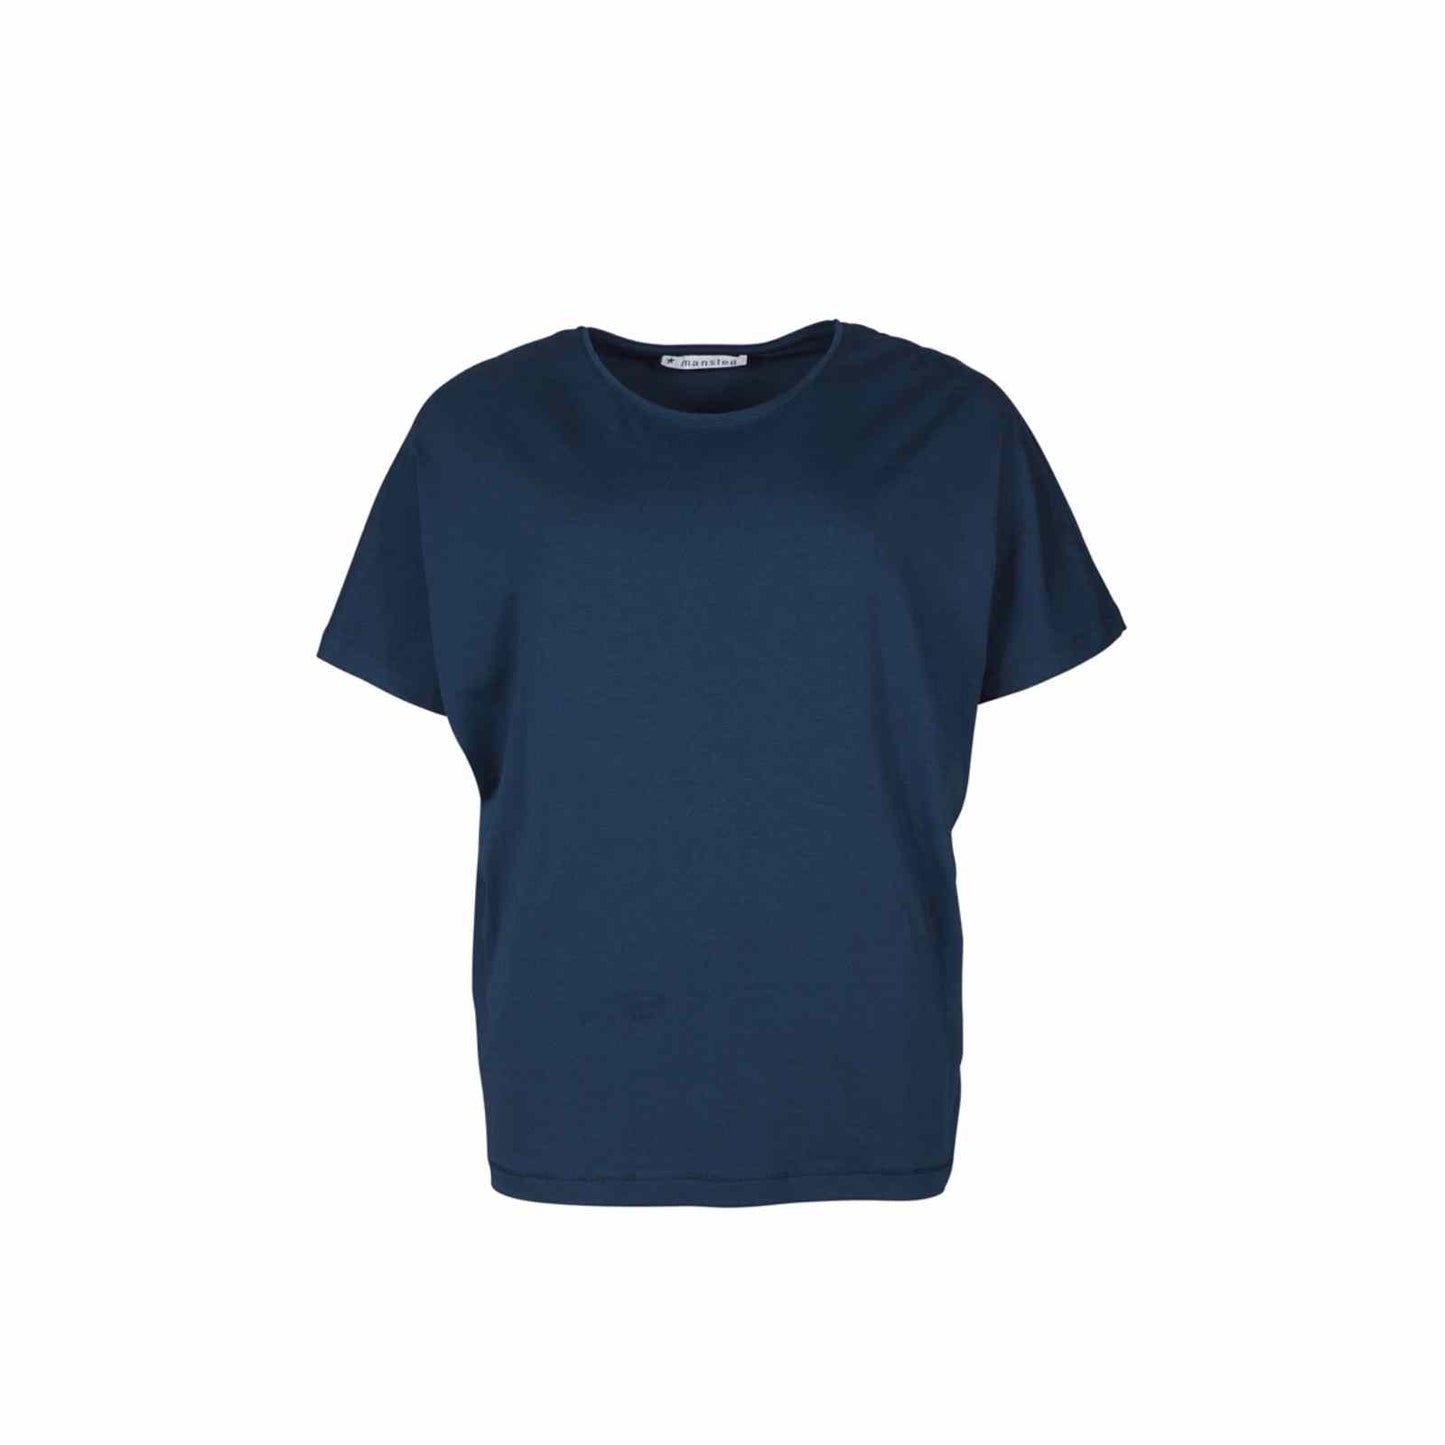 Navy blå ensfarvet t-shirt fra Mansted model Uma